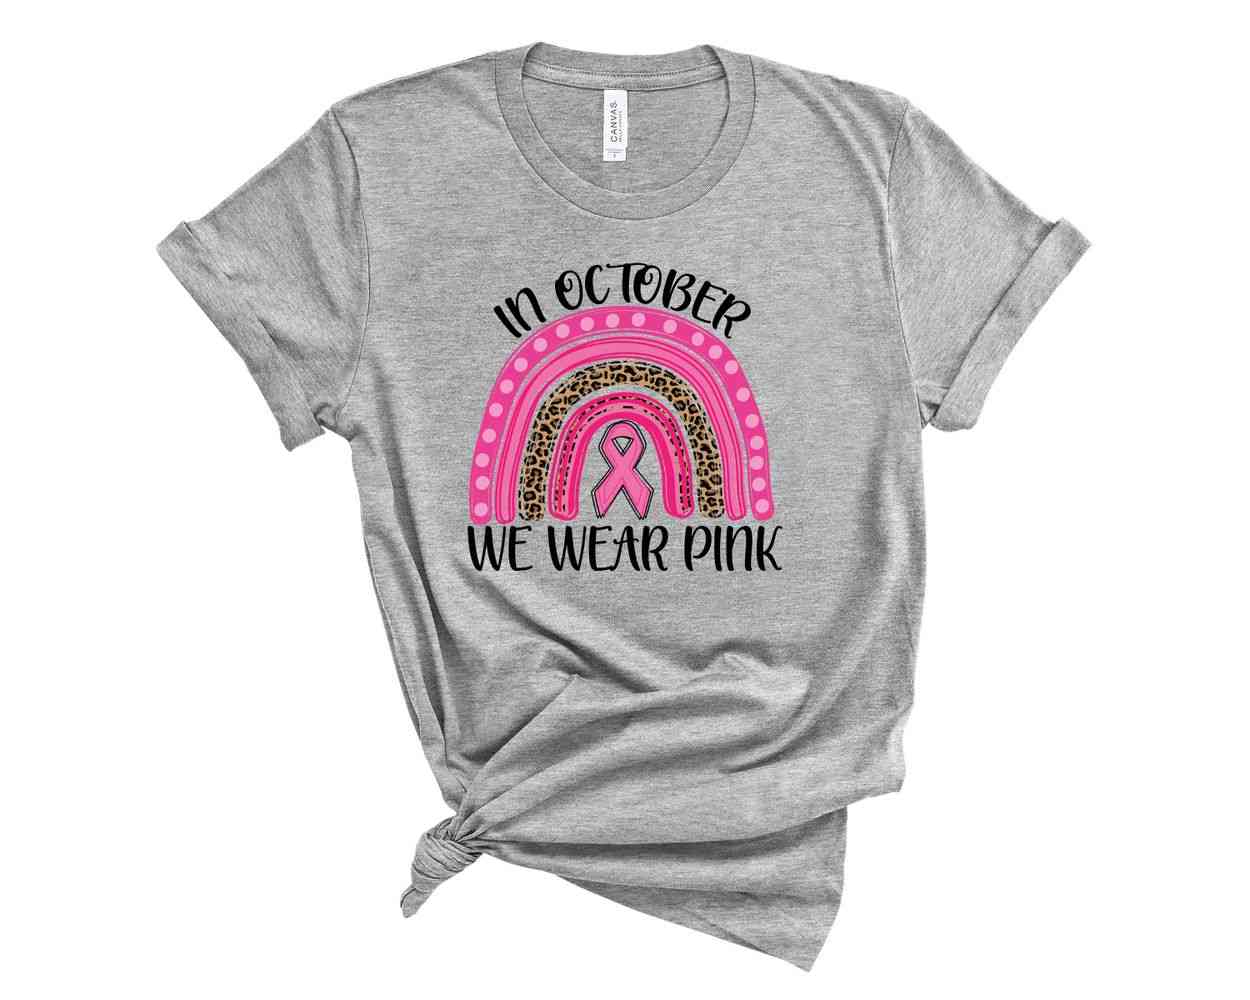 Käytämme vaaleanpunaista, rintasyövän tietoisuuden t-paitaa